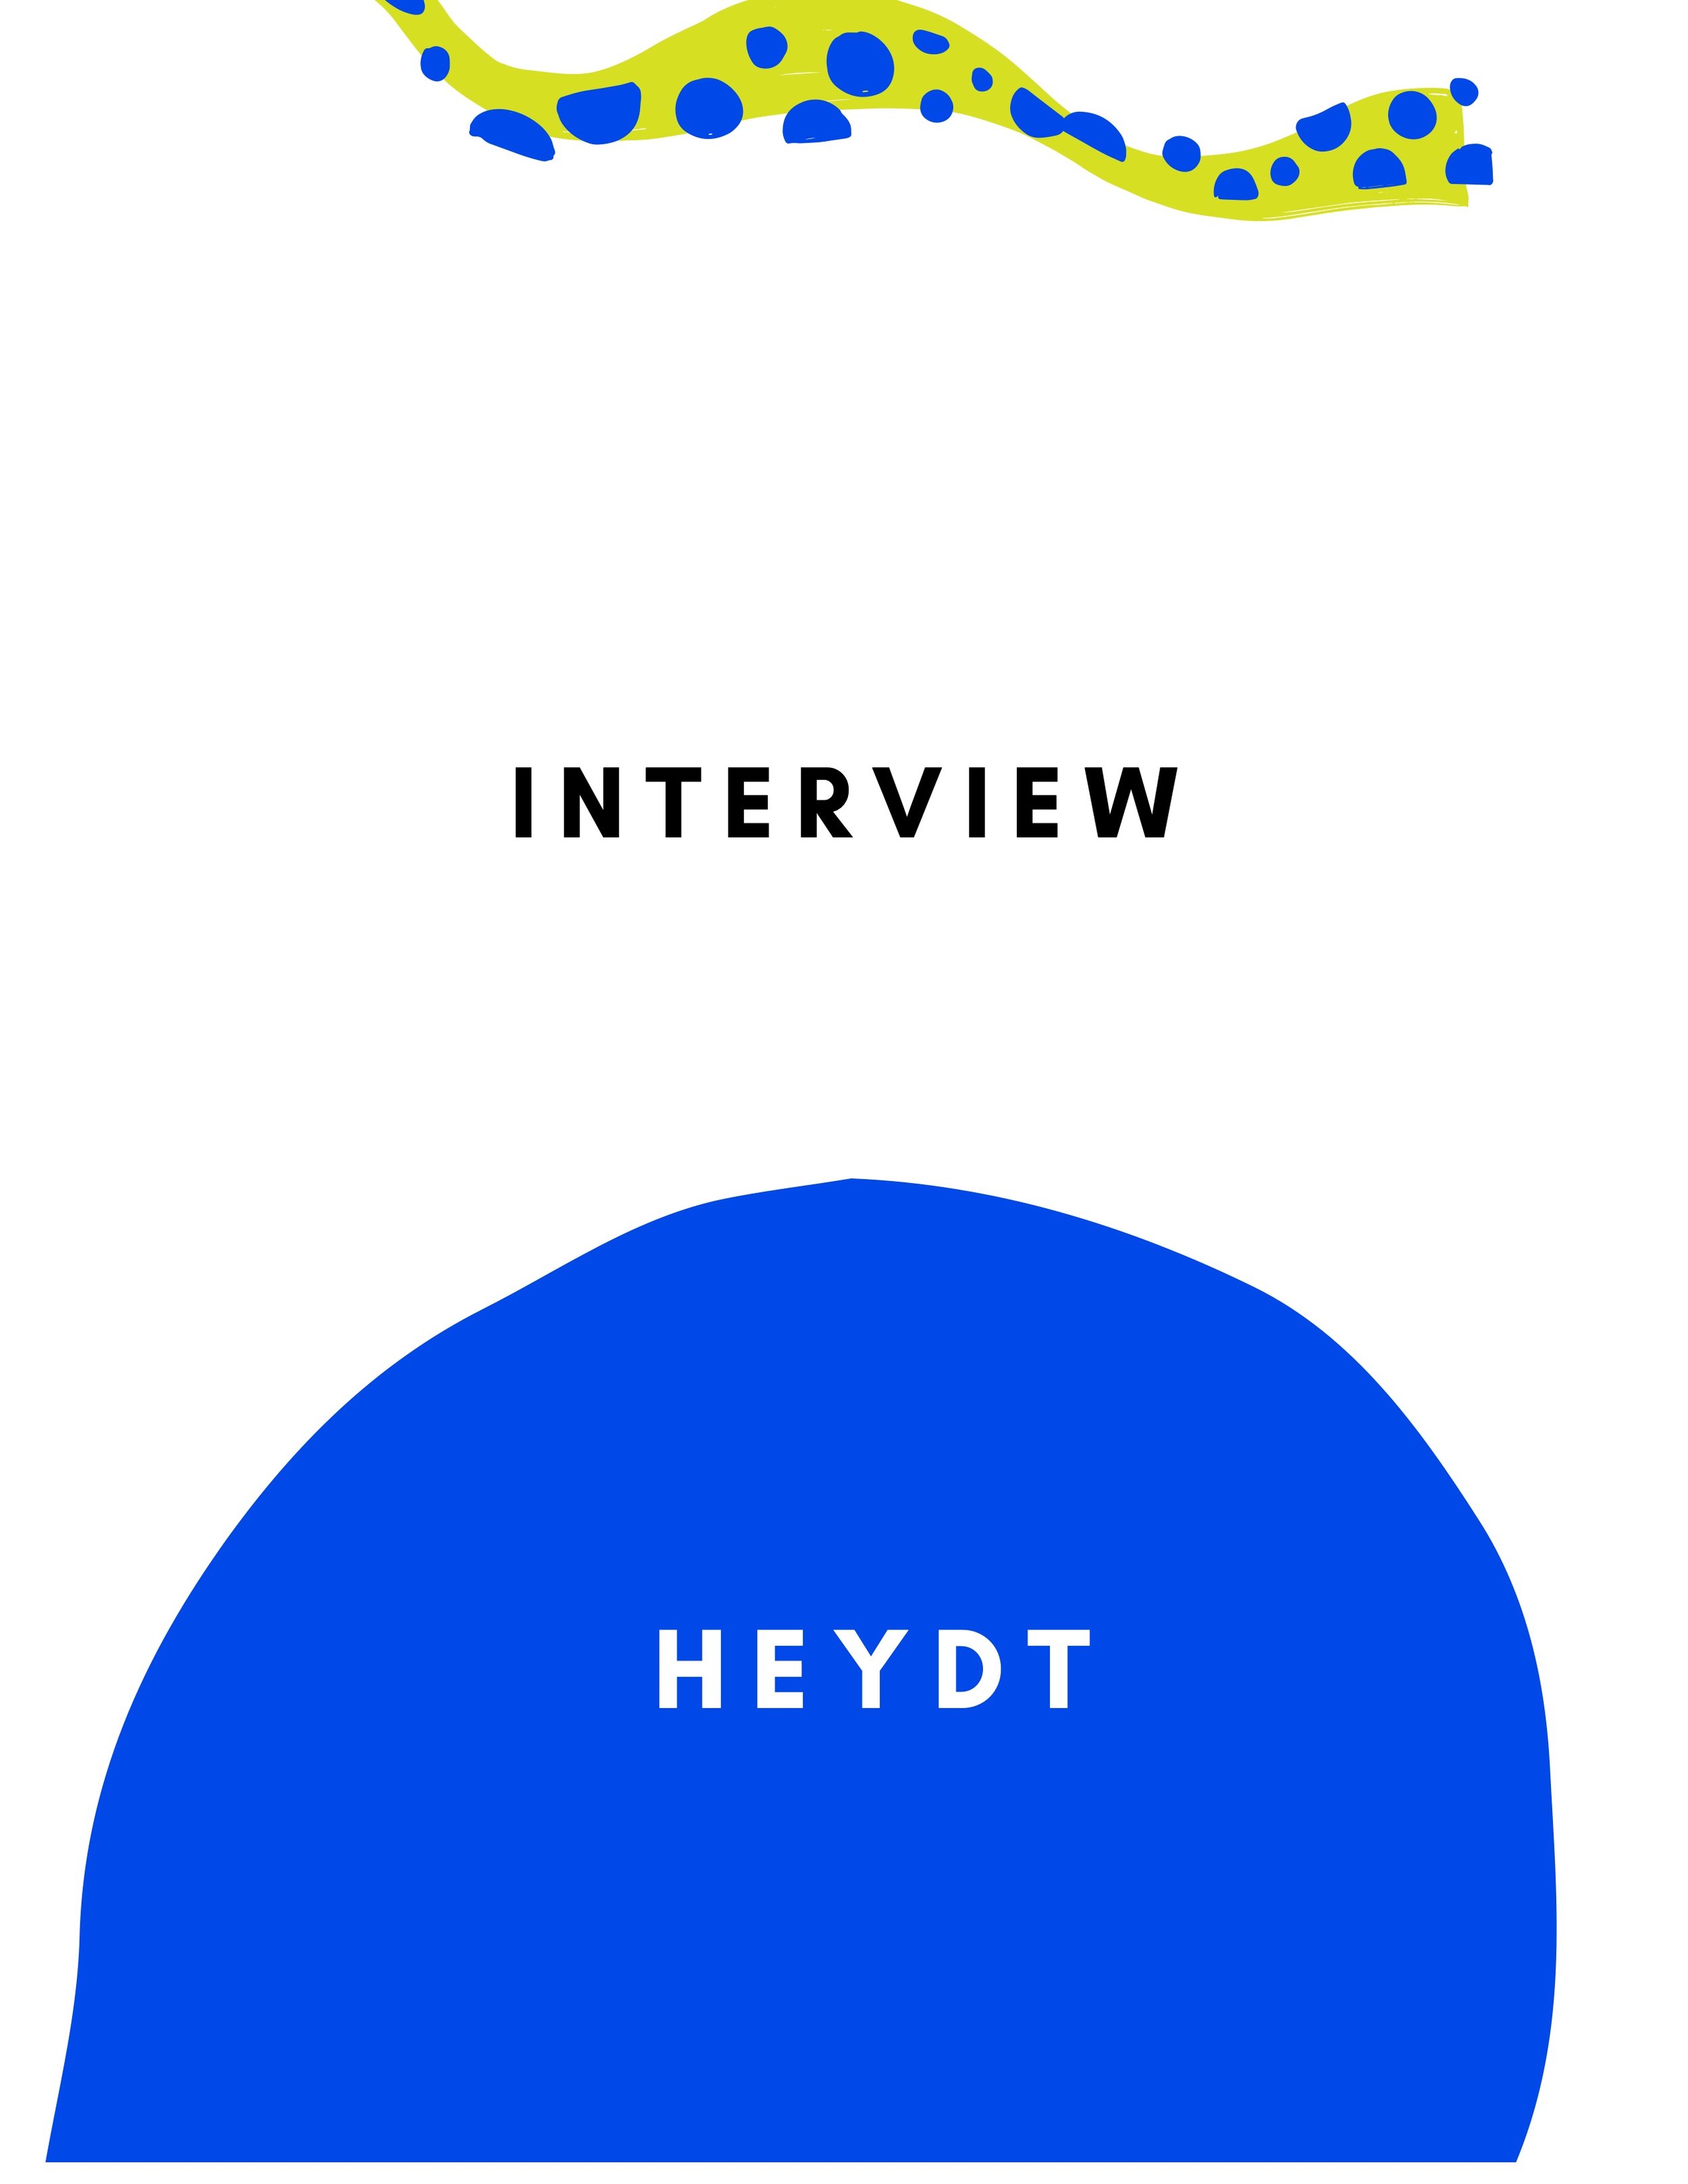 100 Seconds to Midnight Interview_HEYDT 2.jpeg